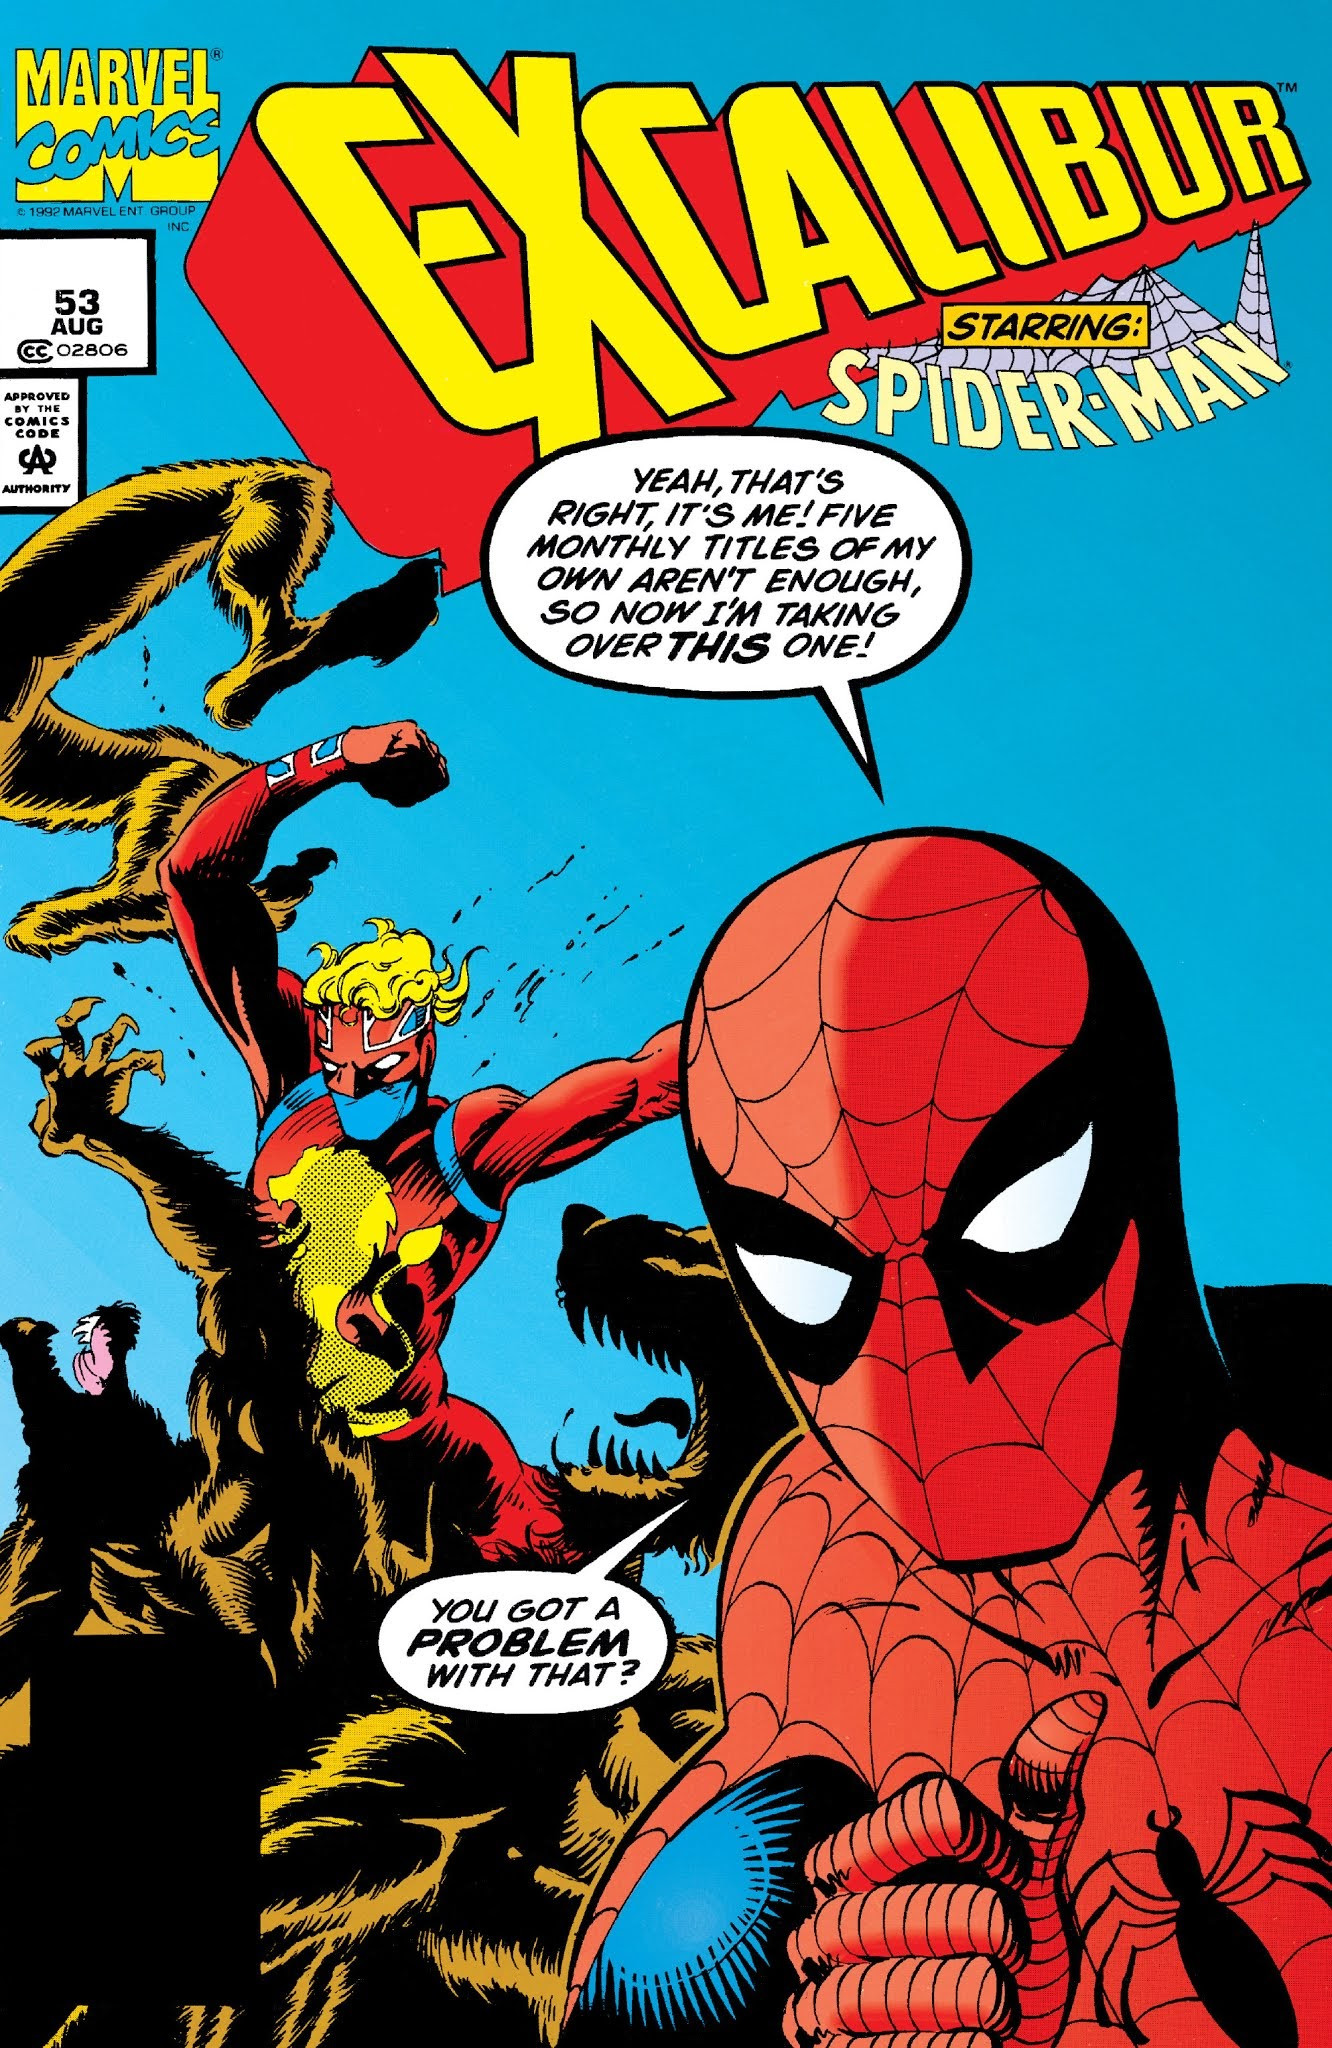 Spider-Man la collection anniversaire - Excalibur comics